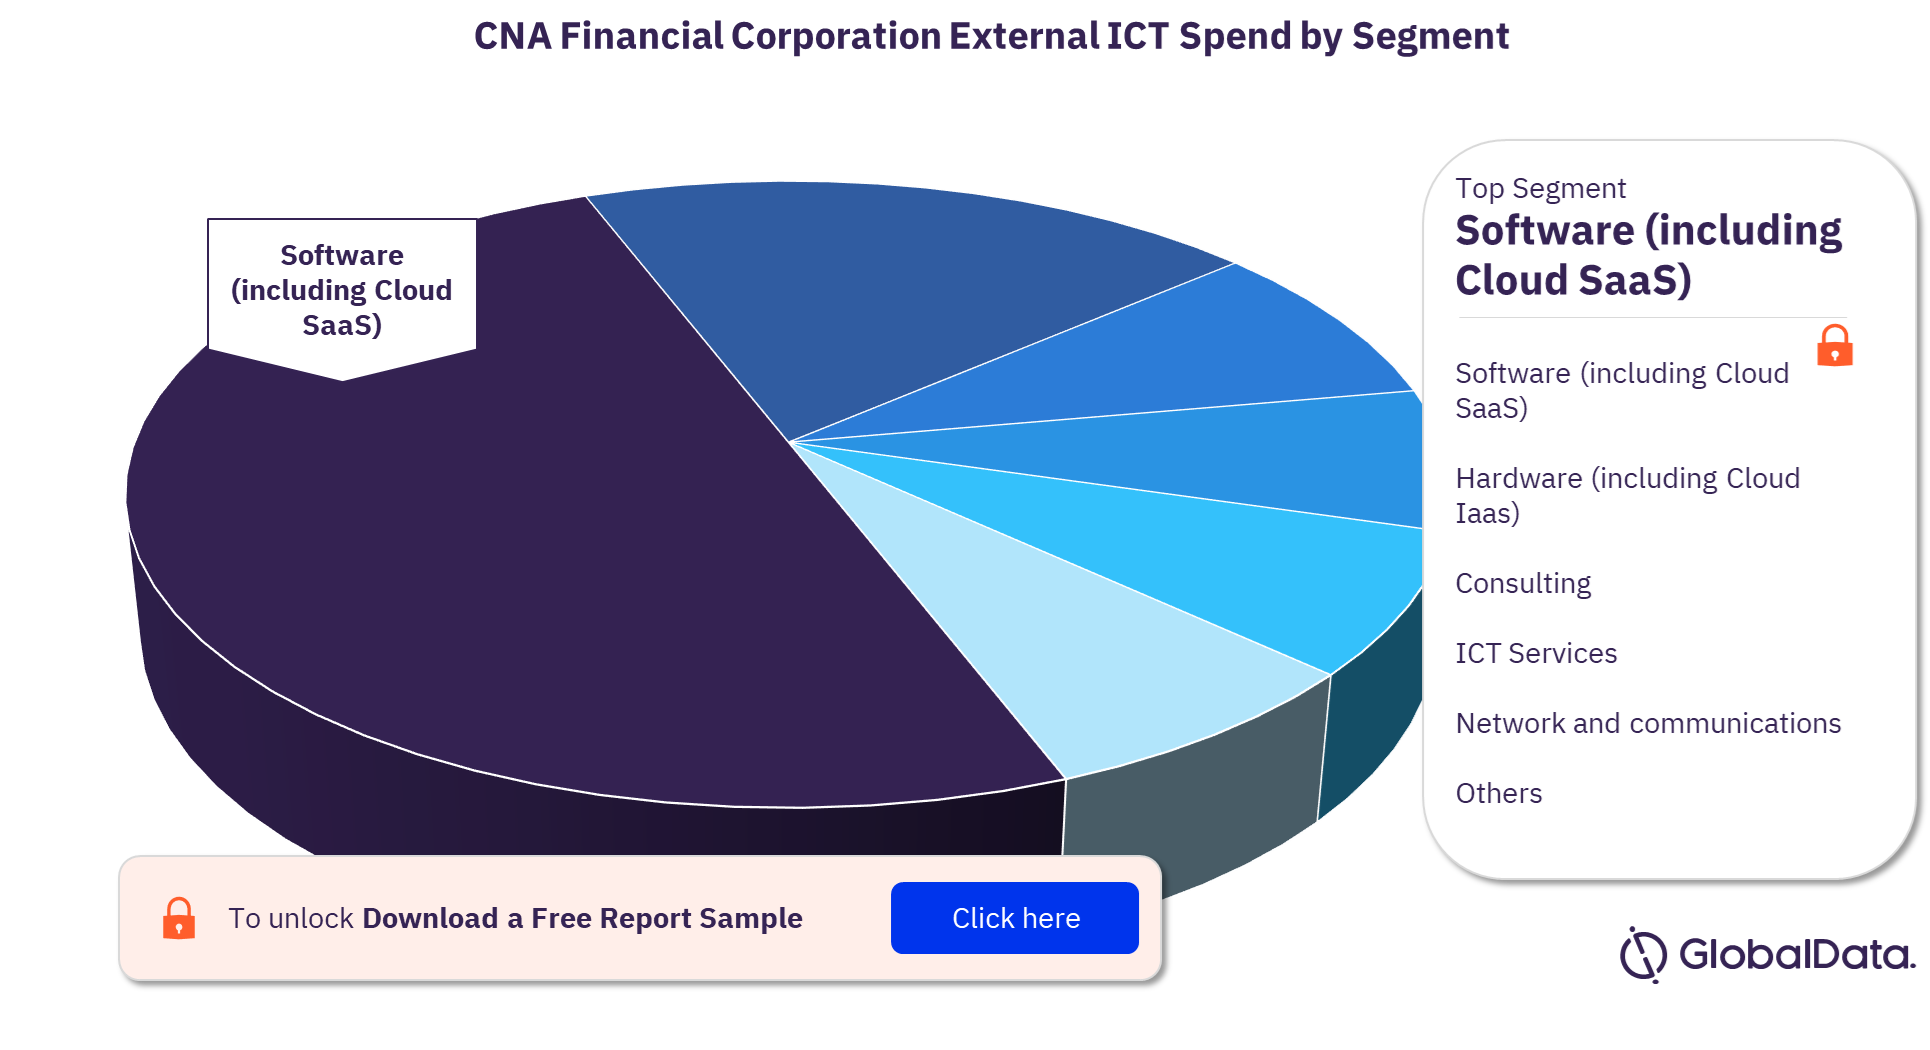 CNA External ICT Spend by Segment